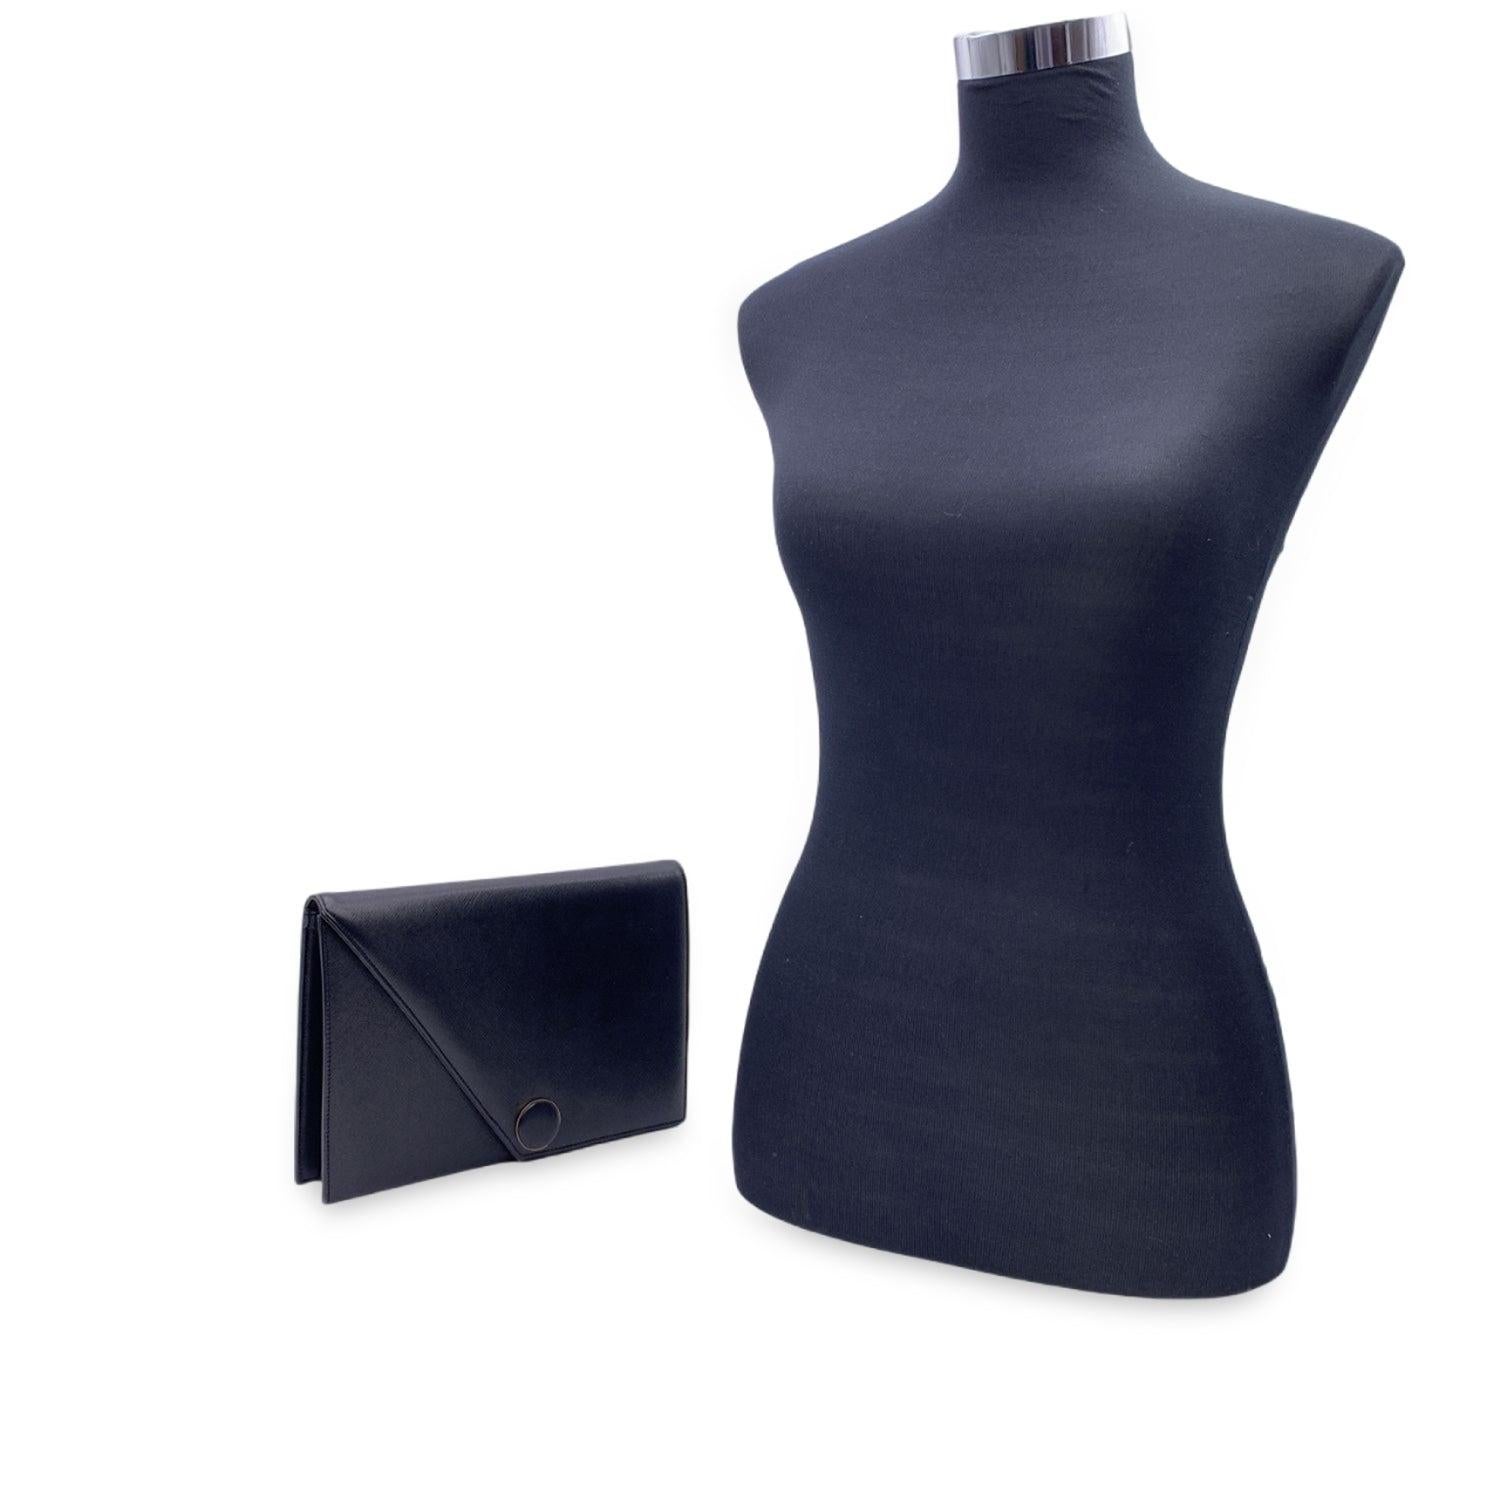 Yves Saint Laurent Vintage Black Leather Handbag Clutch Bag 3